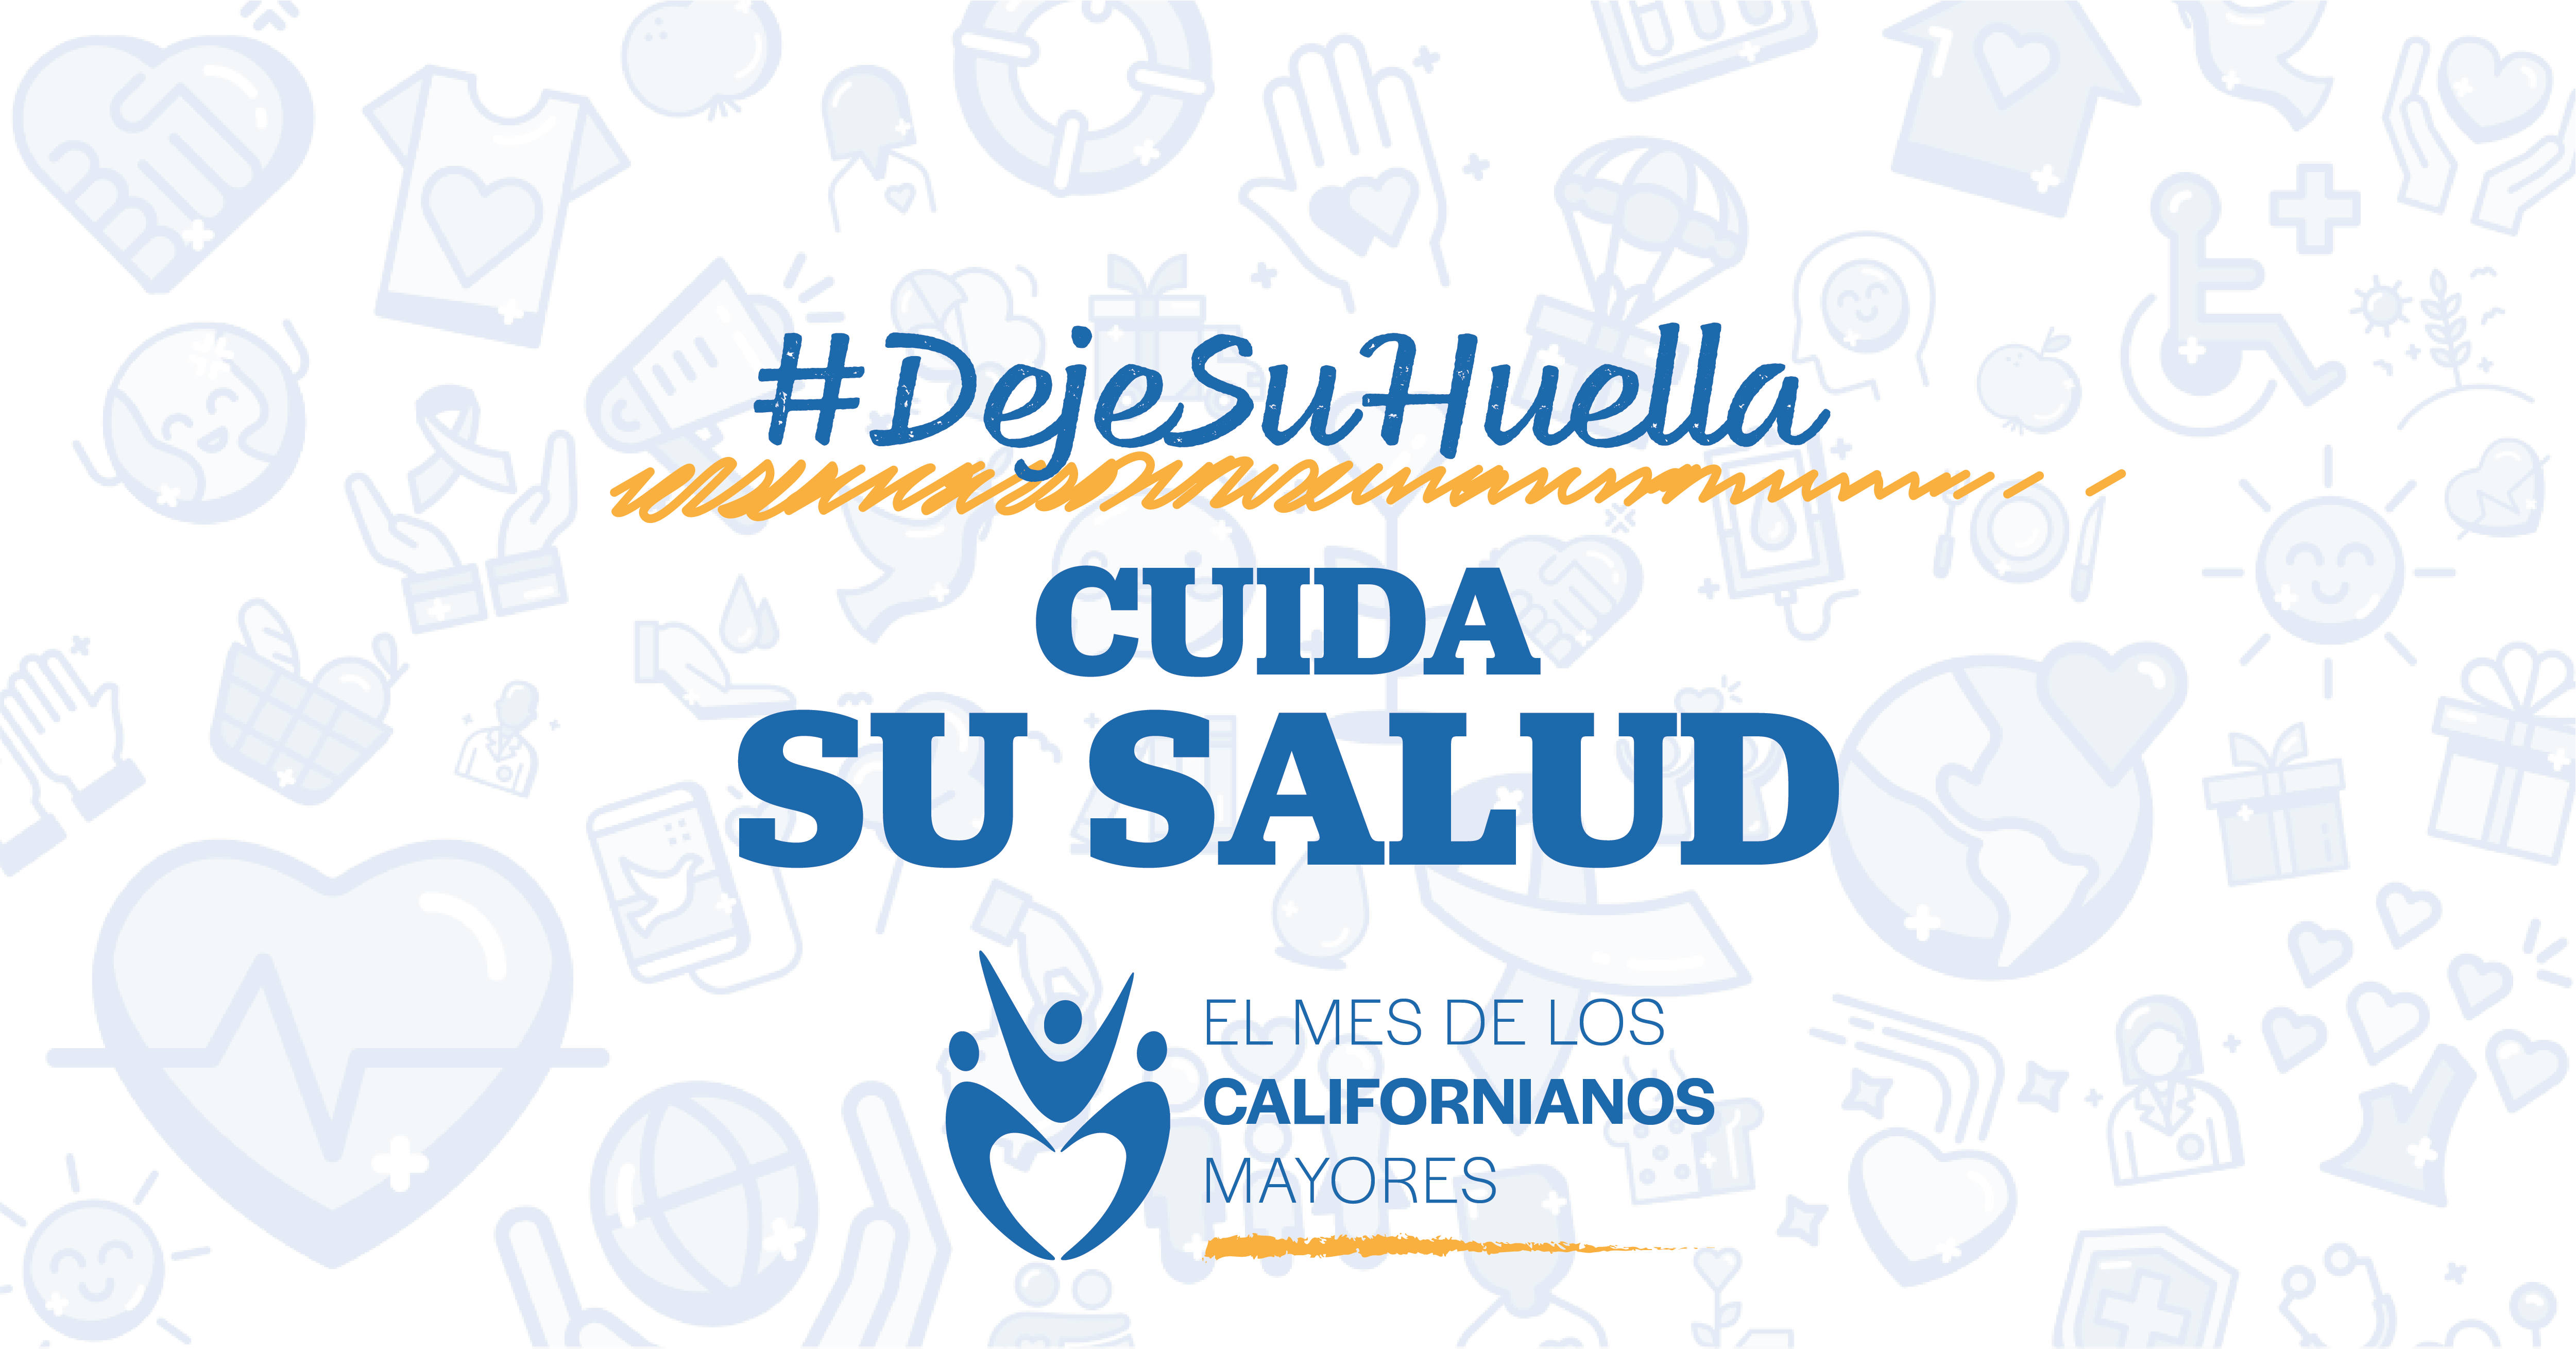 Logotipo del mes de californianos mayores. Texto: #DejeSuHuellacuida su salud